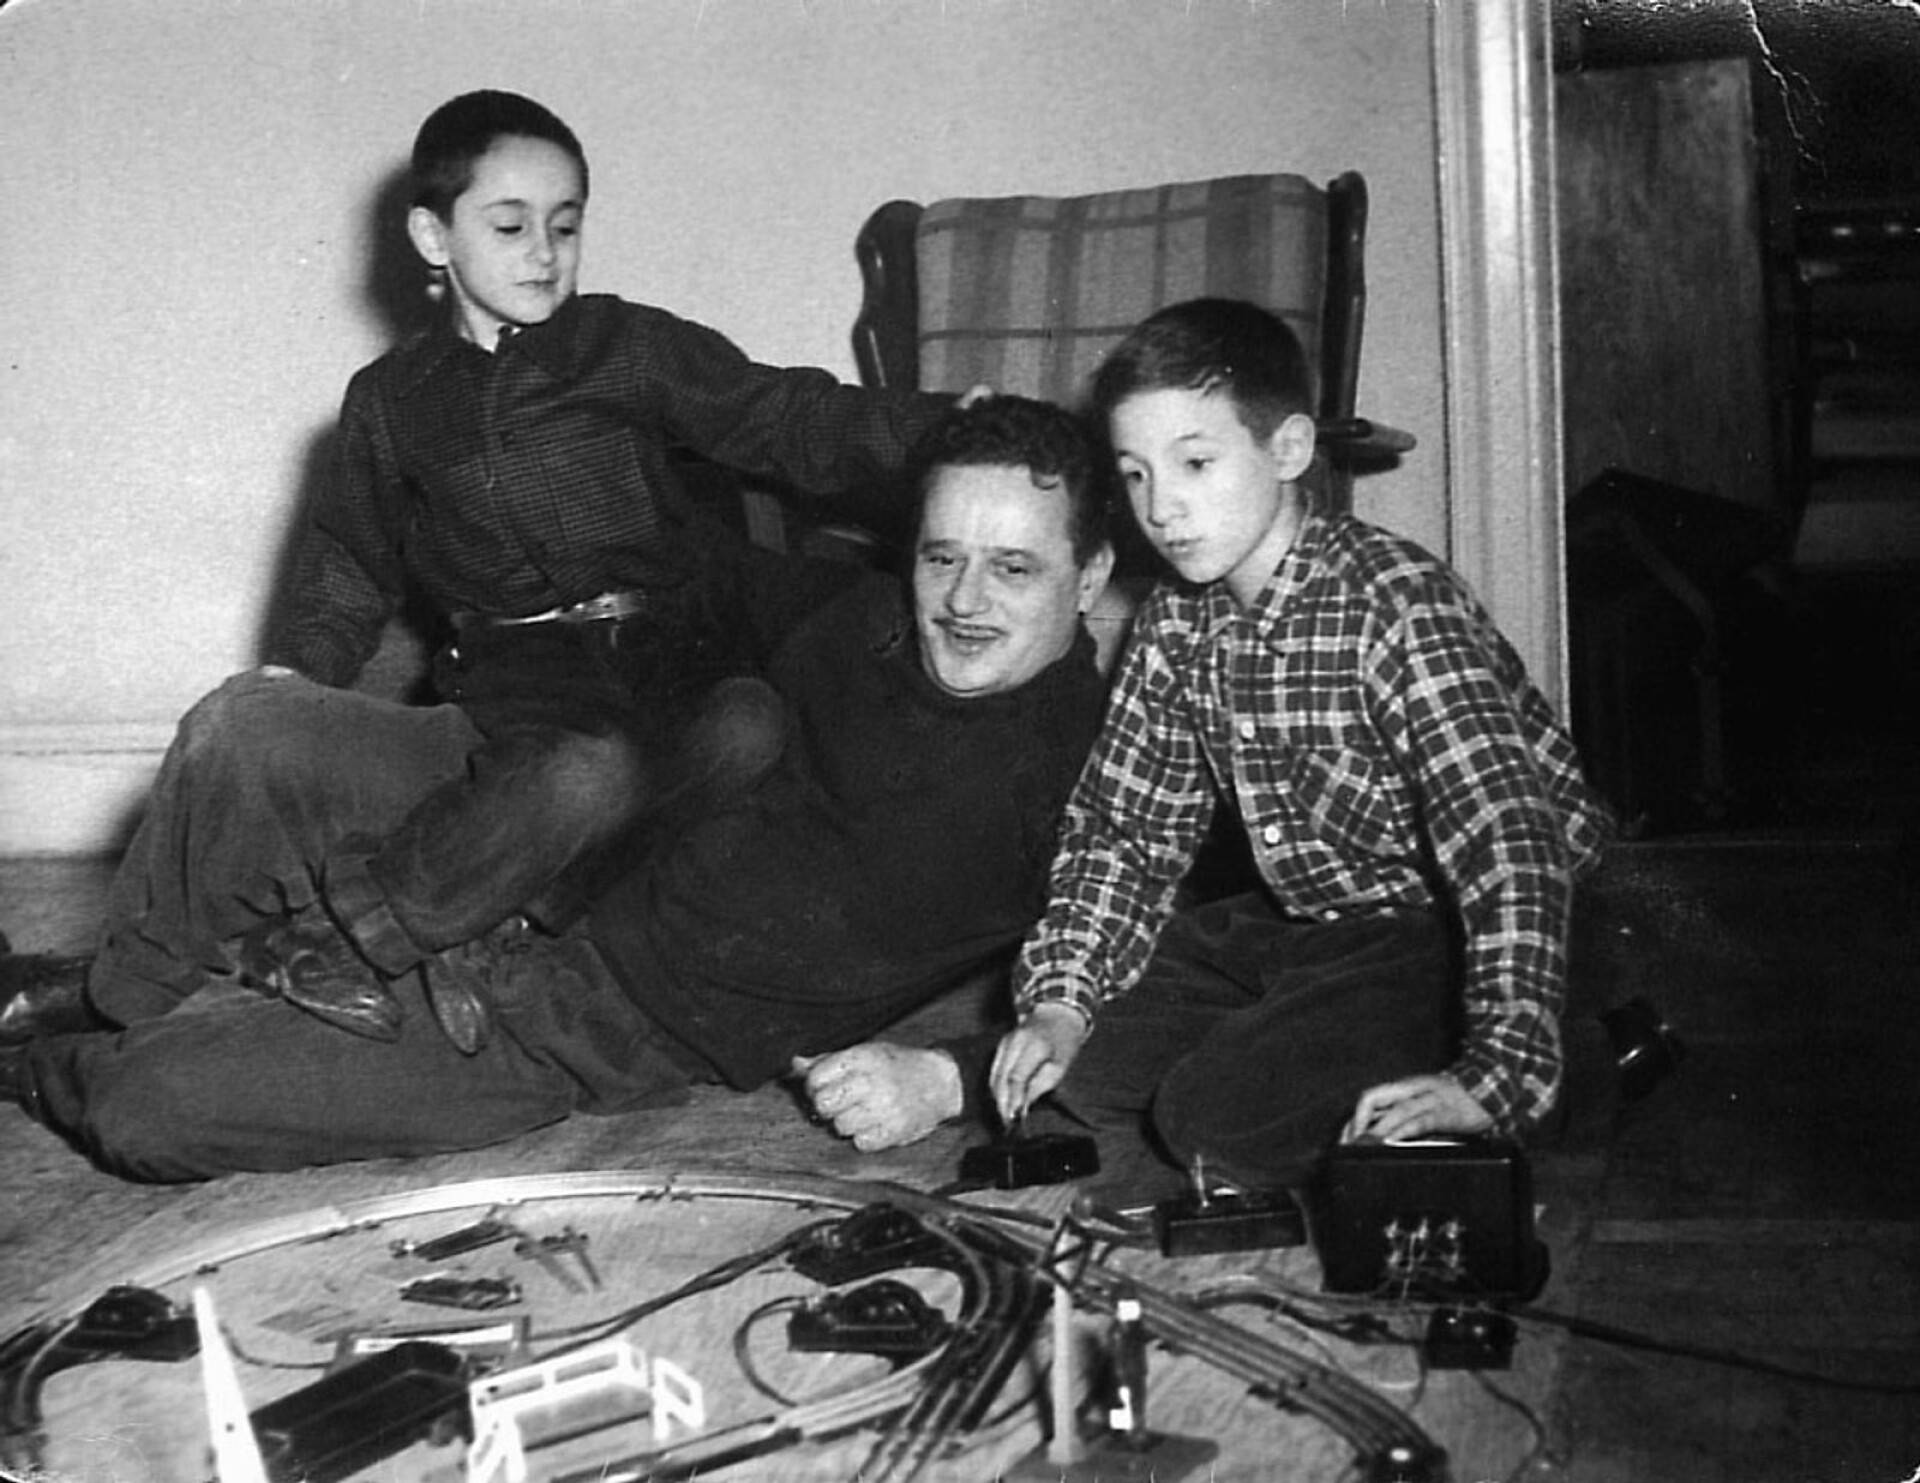 Poikien adoptioisä Abel Meeropol oli tunnettu amerikkalainen lauluntekijä, joka sanoitti muun muassa Billie Holidayn levyttämän kappaleen Strange Fruit. Hänen sanoituksiaan kuullaan myös Frank Sinatran kappaleessa The House I Live In.